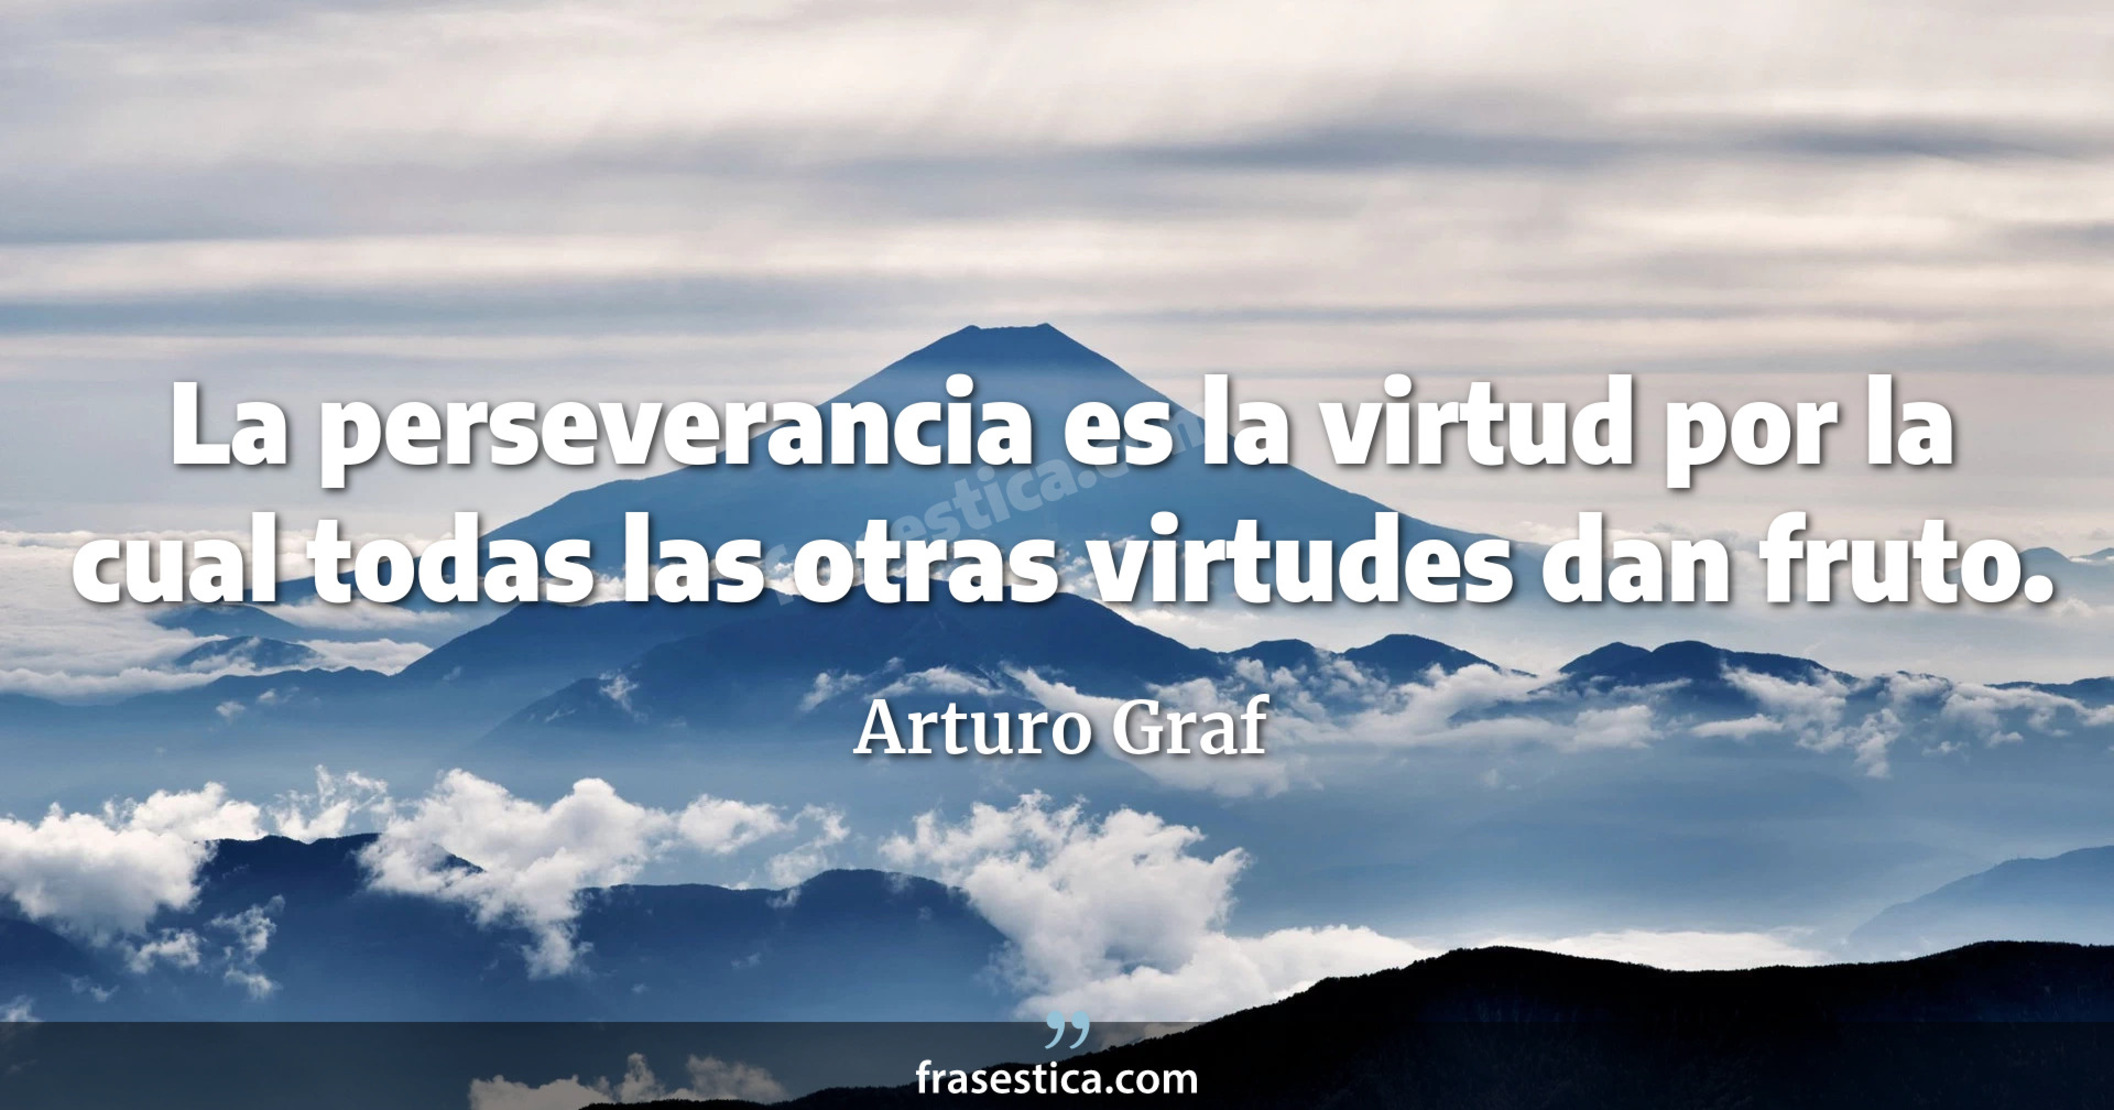 La perseverancia es la virtud por la cual todas las otras virtudes dan fruto. - Arturo Graf